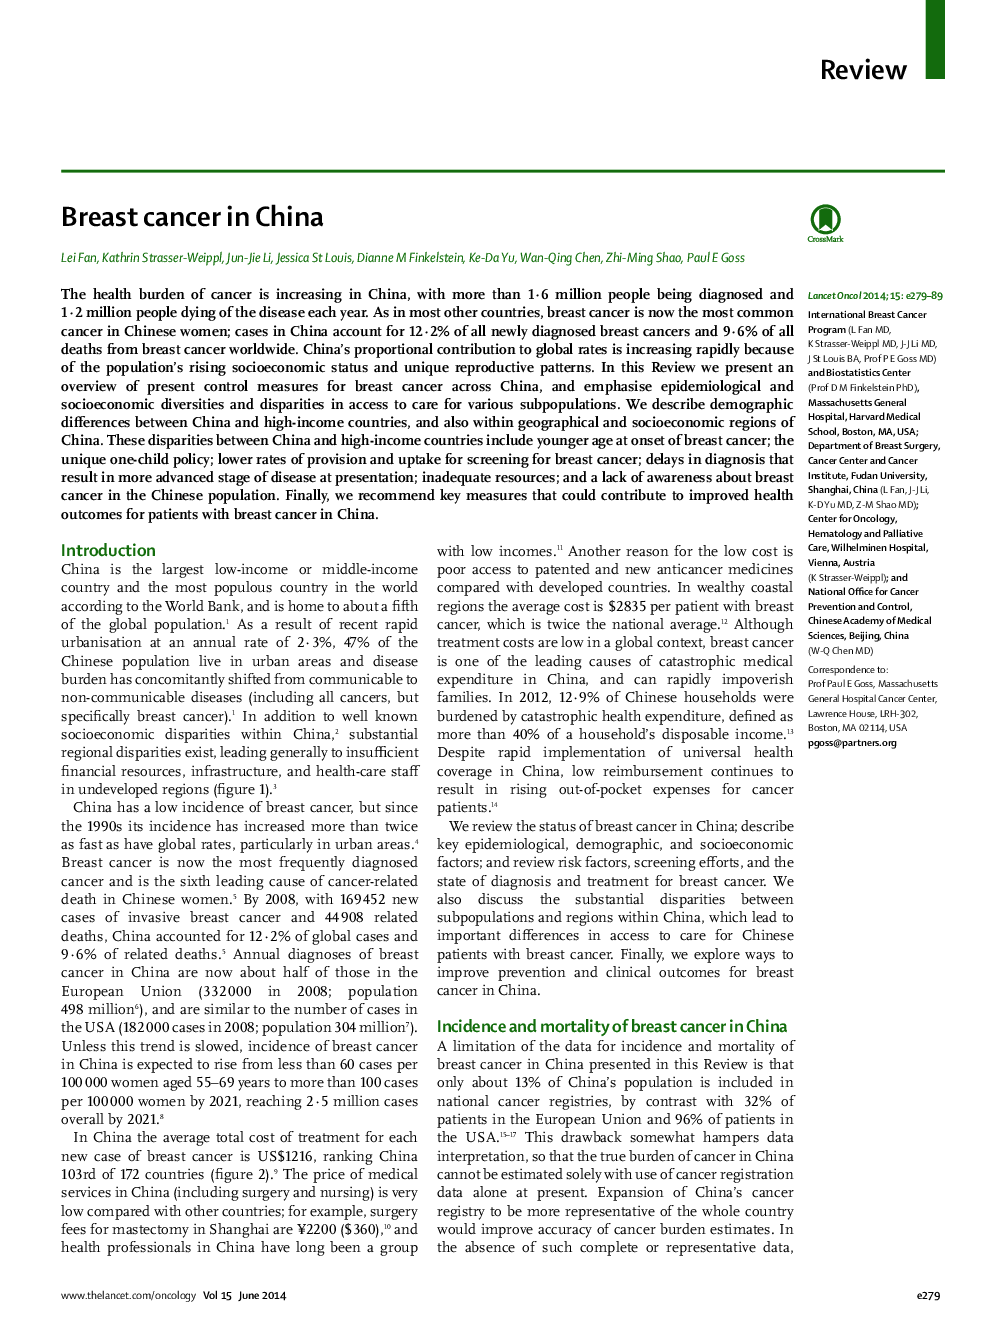 سرطان پستان در چین 